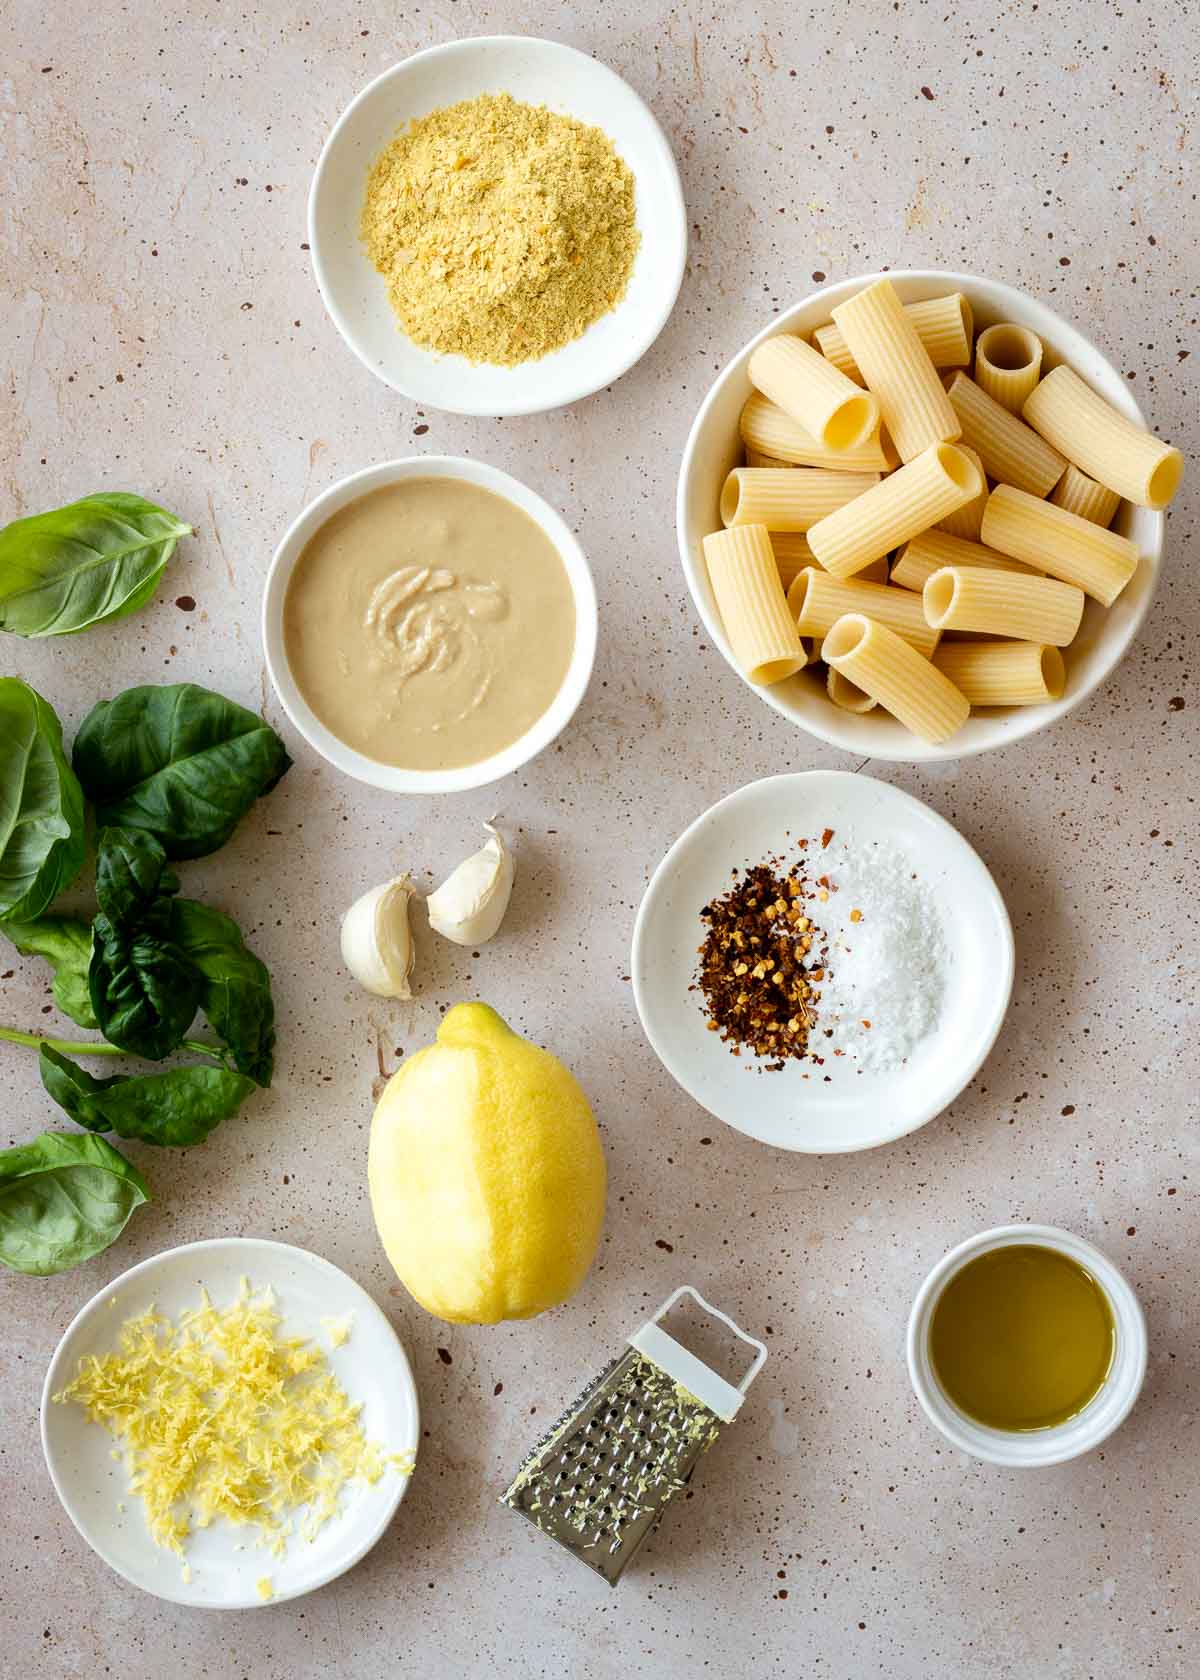 Tahini sauce ingredients, including tahini, lemon zest, pasta and basil